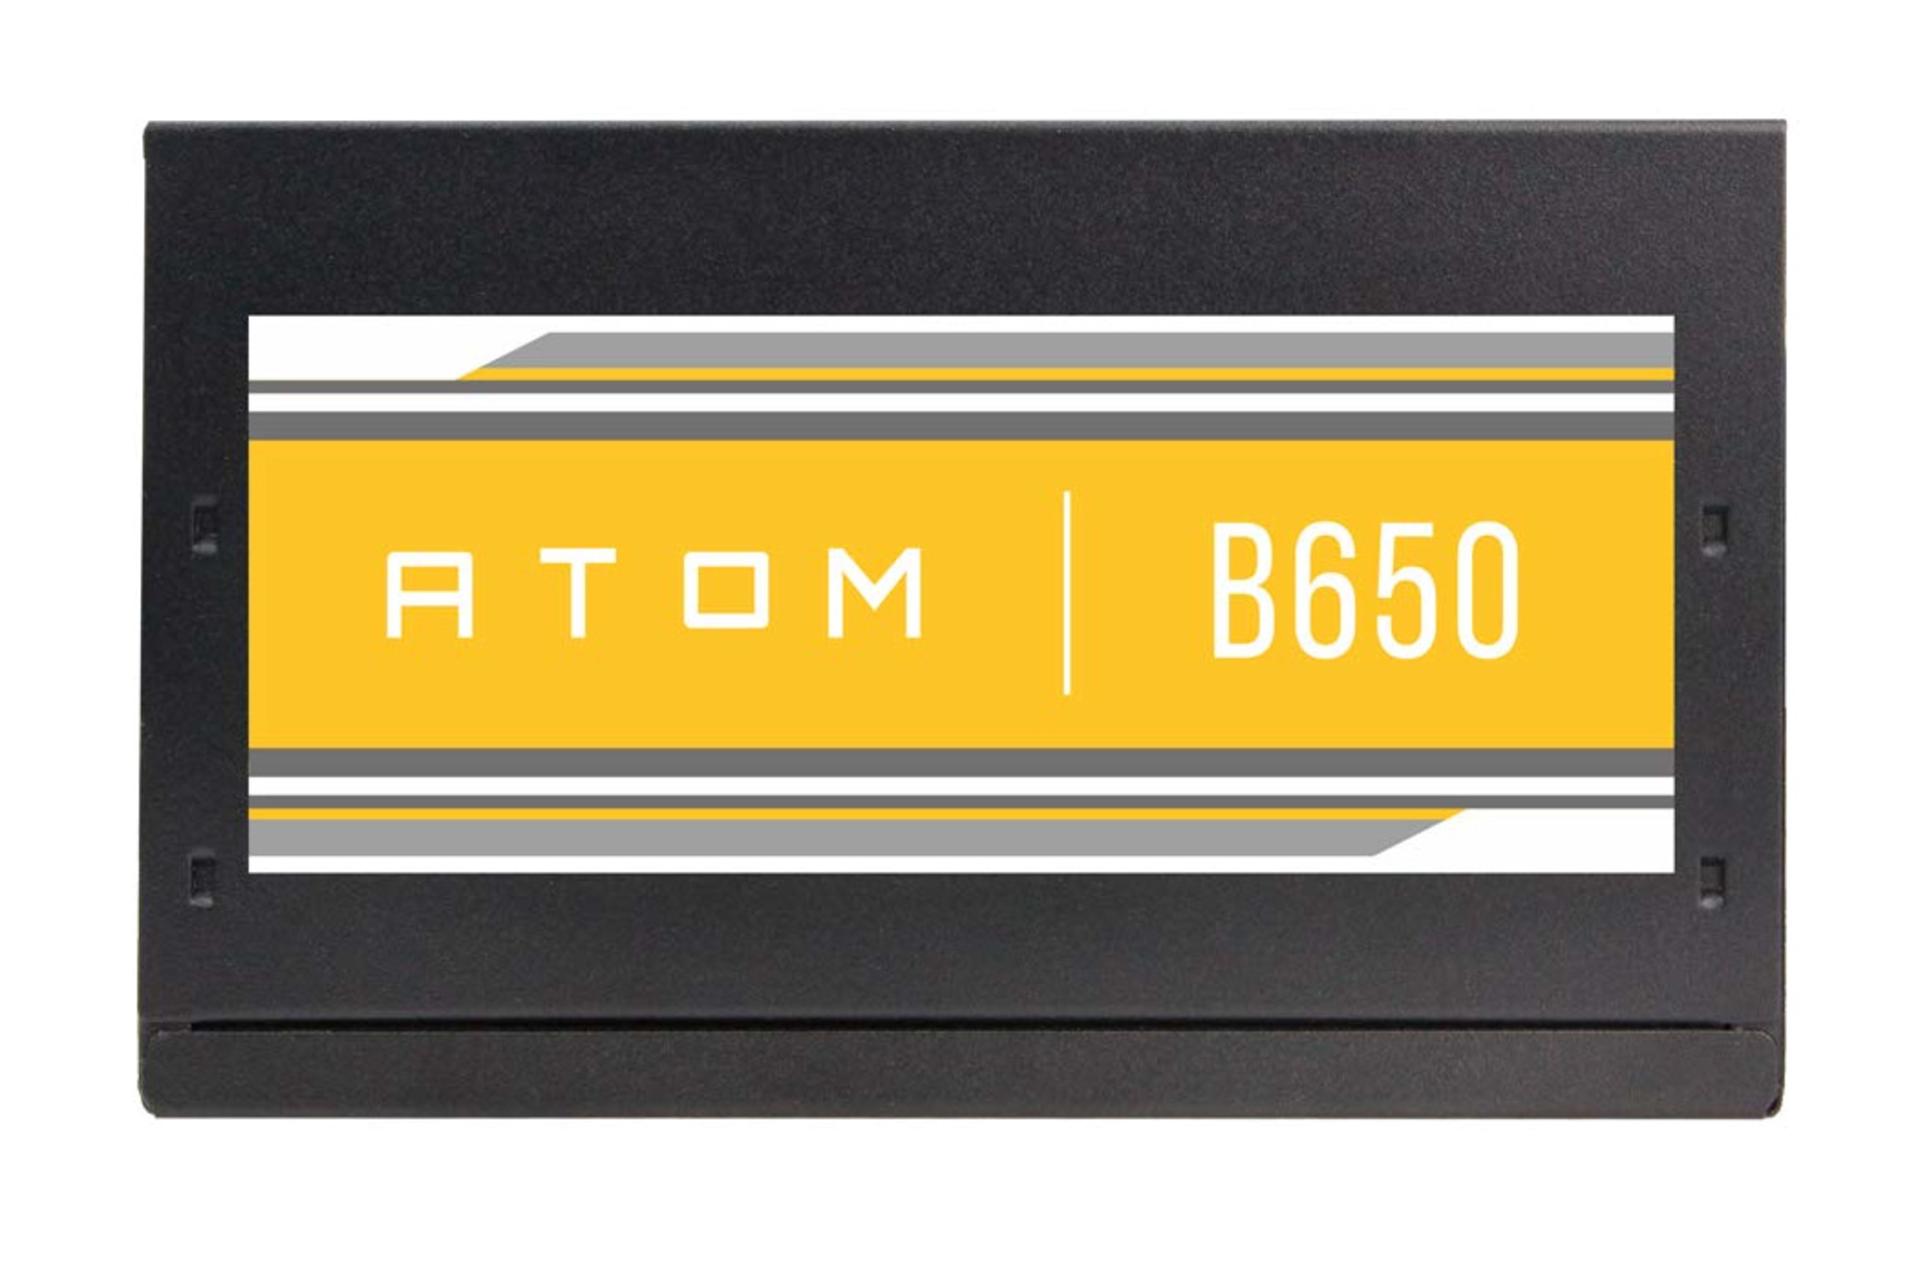 نمای جانبی پاور کامپیوتر انتک ATOM B650 با توان 650 وات